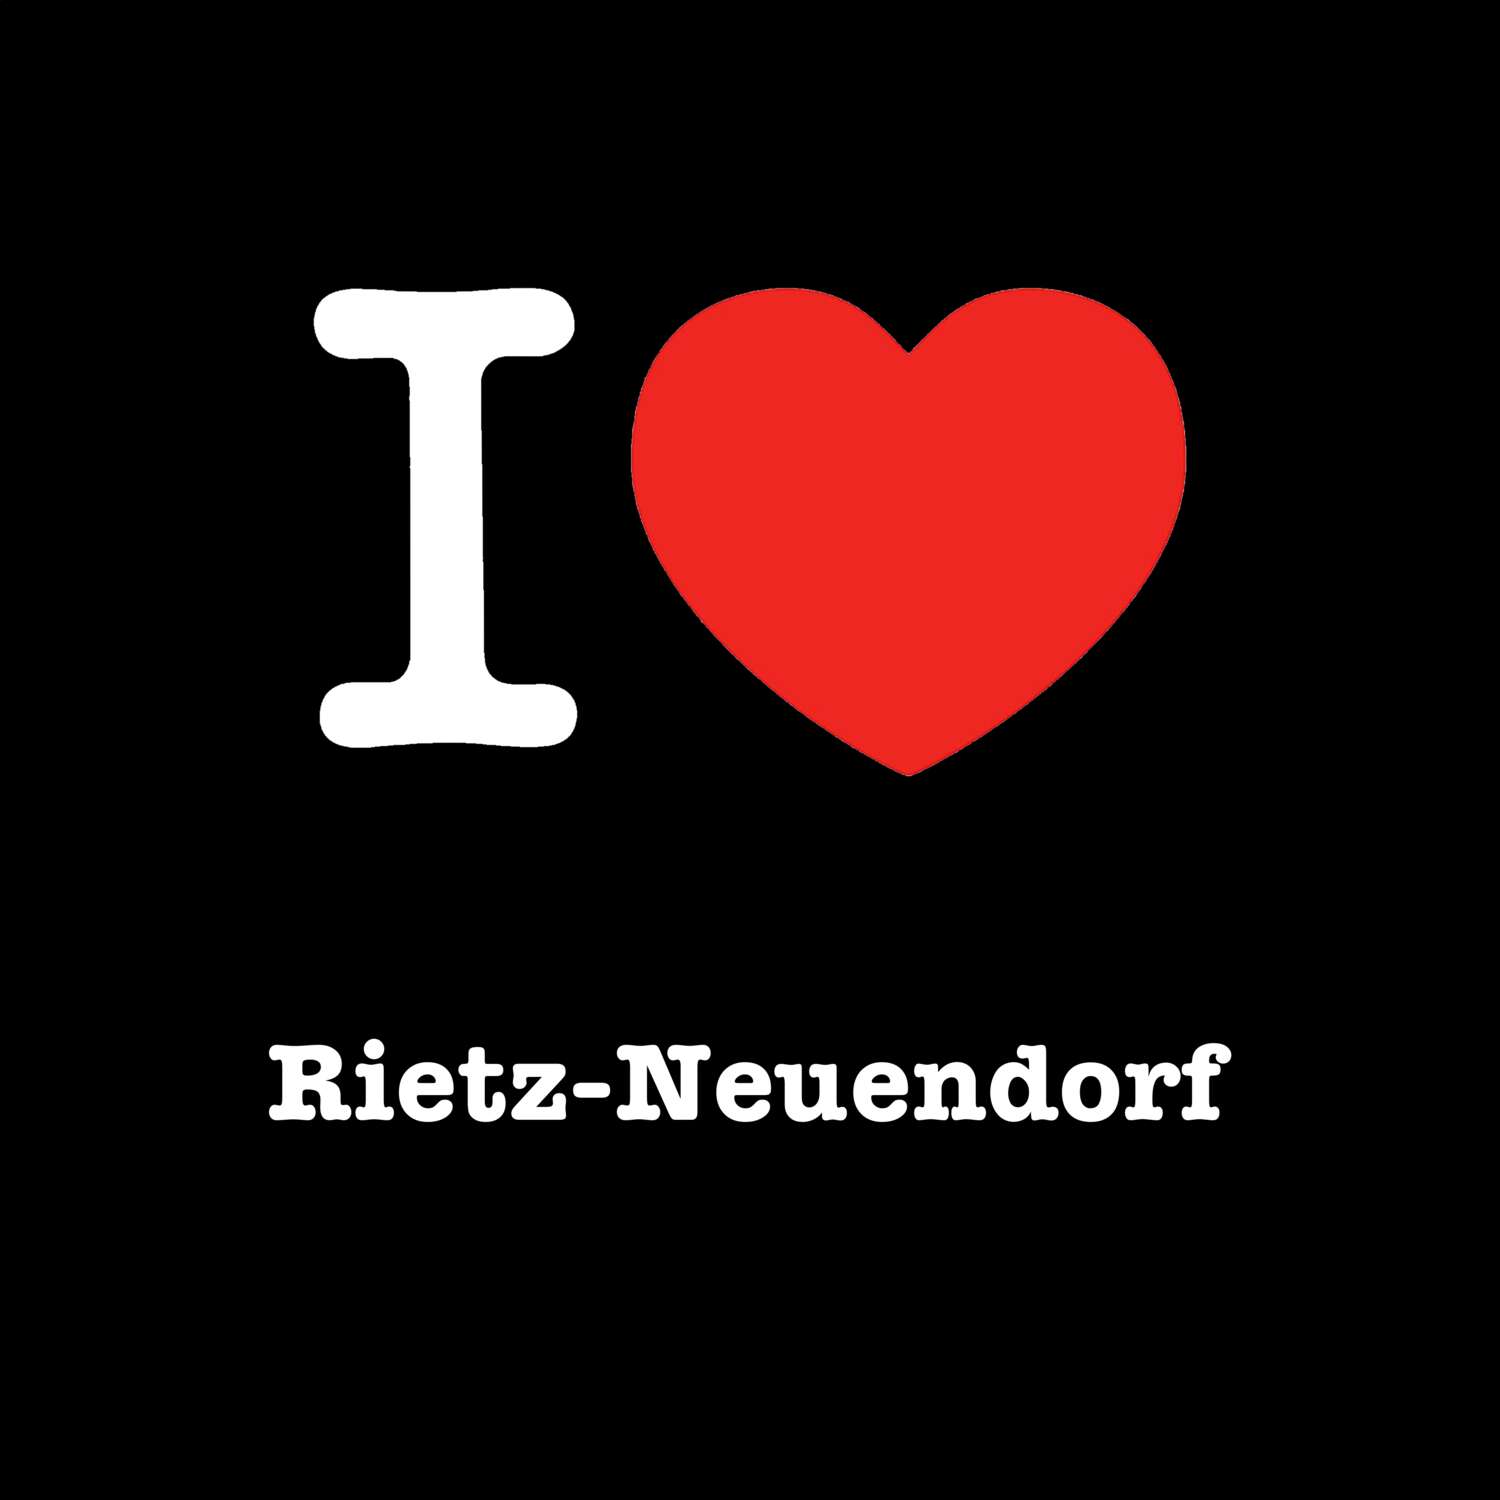 Rietz-Neuendorf T-Shirt »I love«